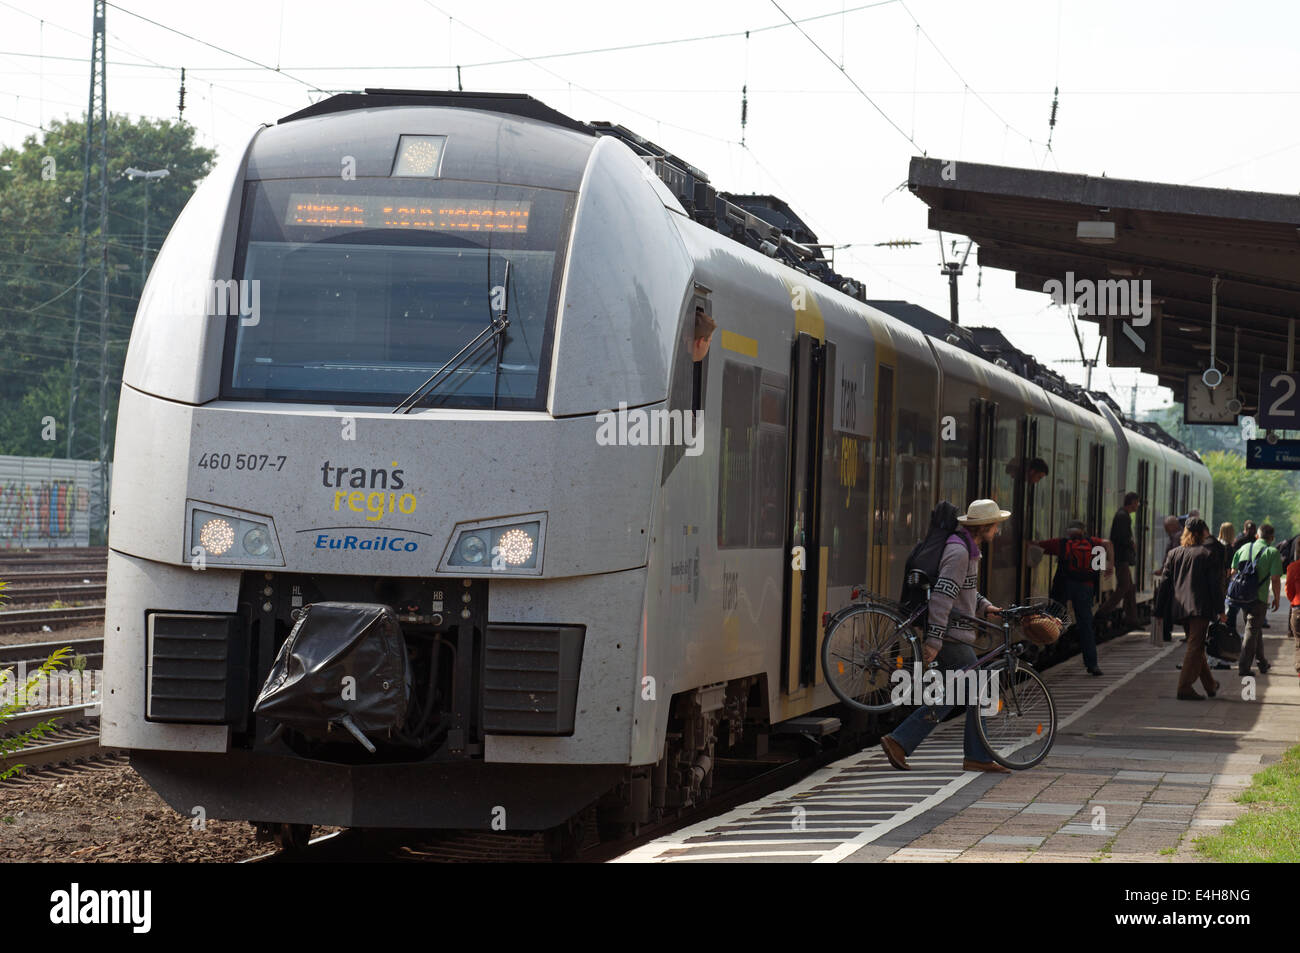 Trans regio EuRailCo local passenger train, Cologne, Germany. Stock Photo